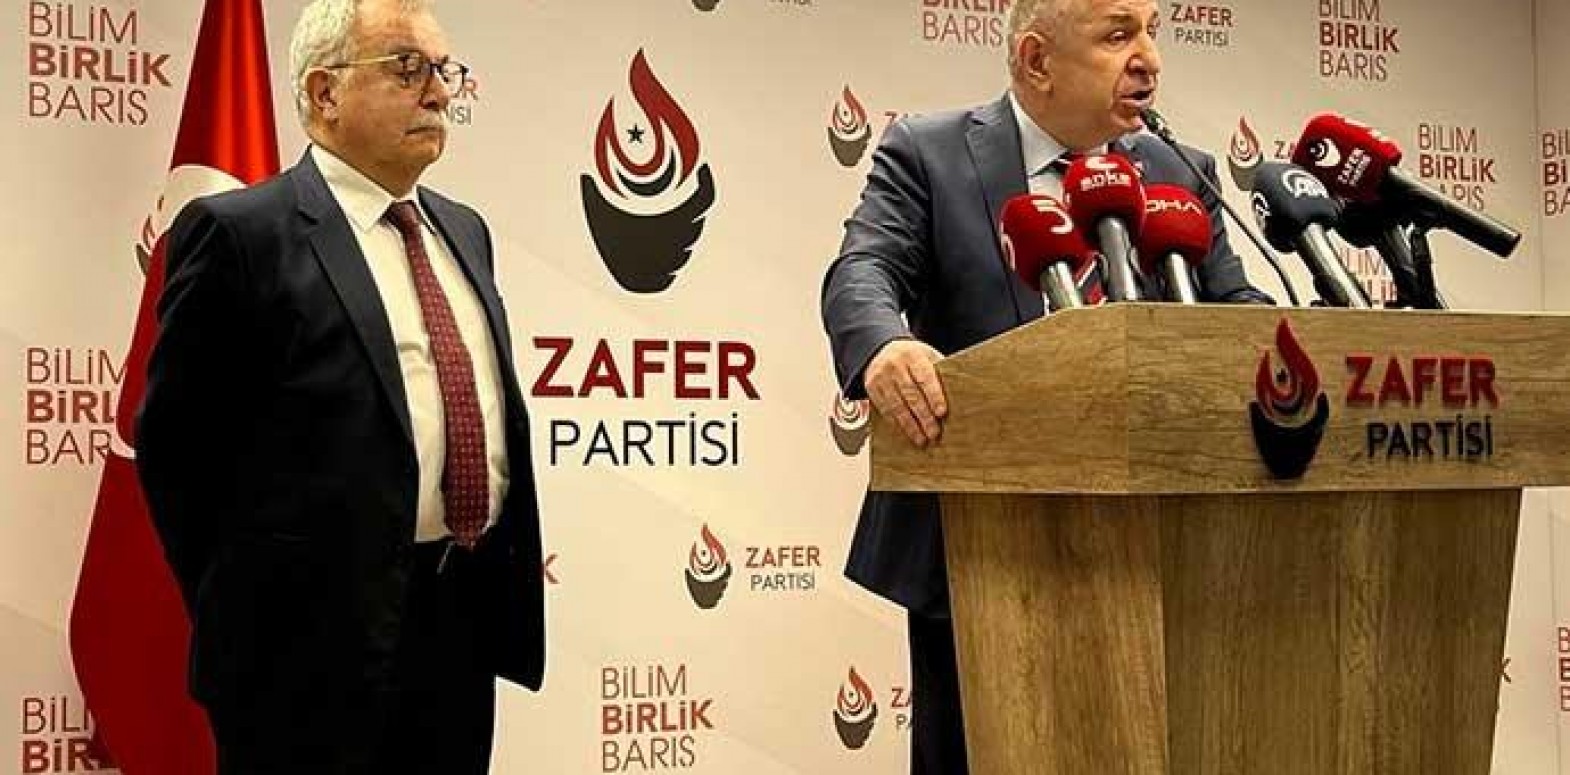 هل استبعد "أوميت أوزداغ" وحزبه من الانتخابات التركية 2023؟